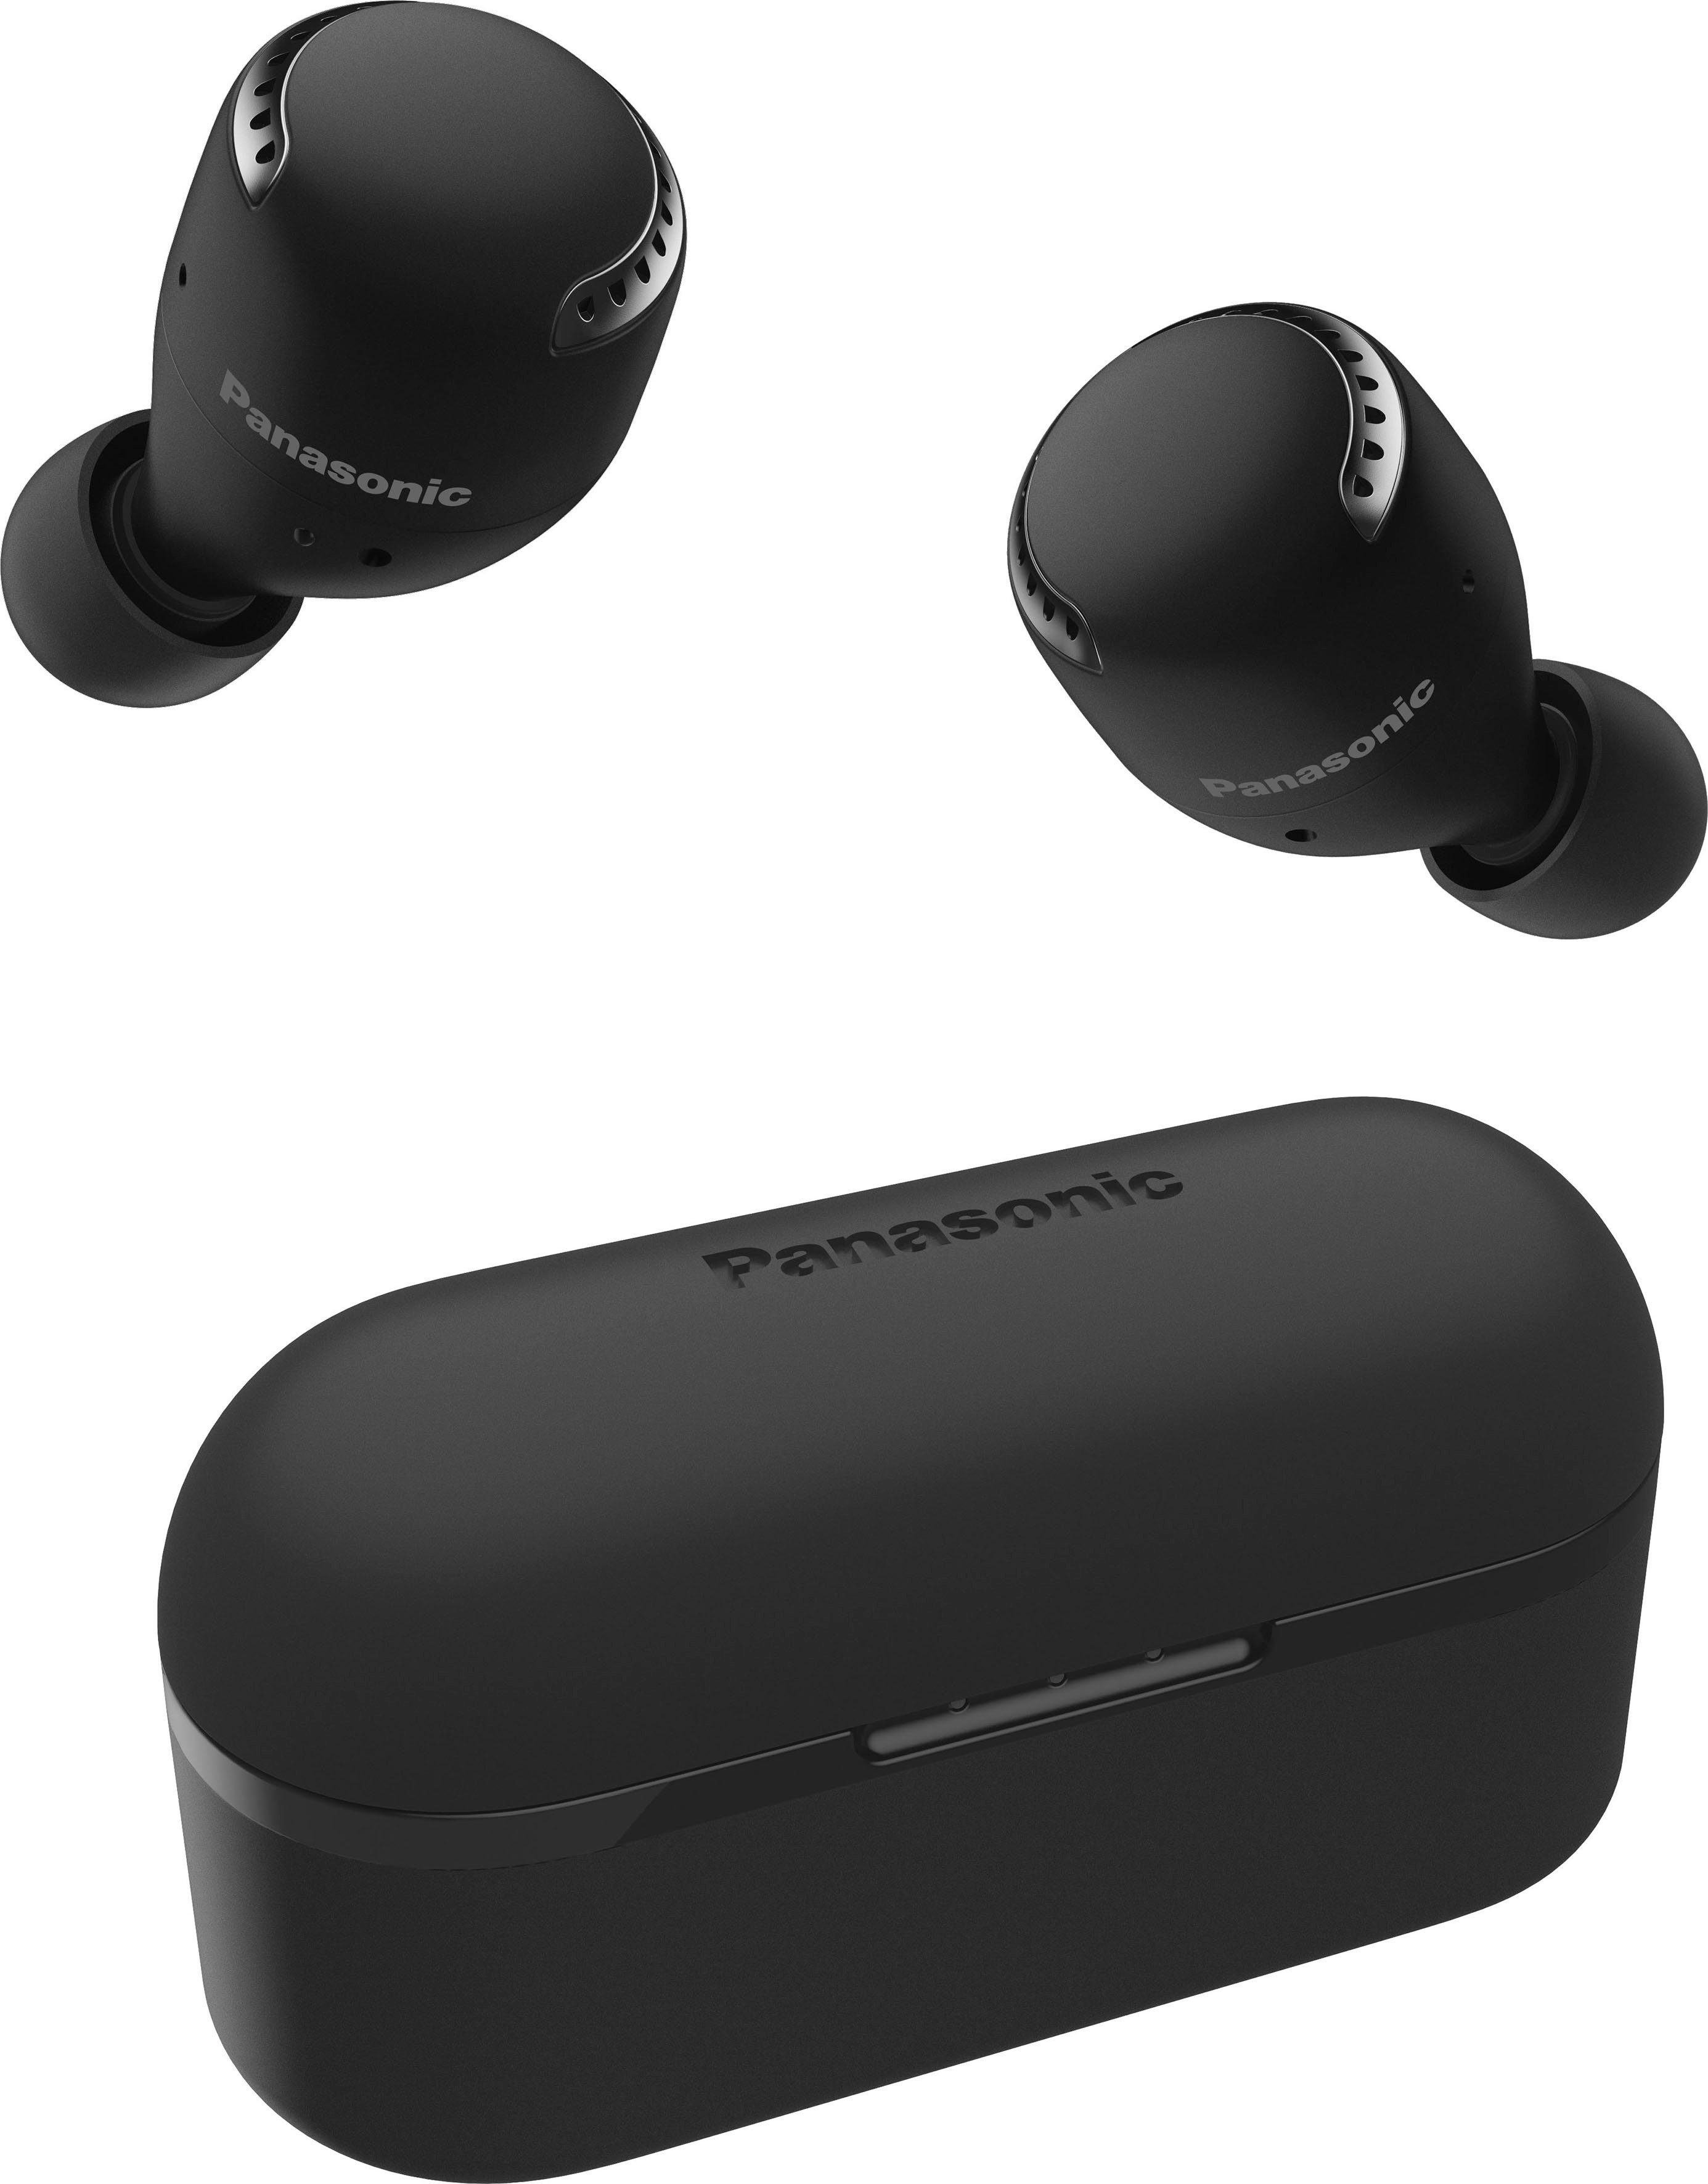 RZ-S500WE schwarz Sprachsteuerung, Wireless, In-Ear-Kopfhörer (Noise-Cancelling, wireless True Bluetooth) Panasonic